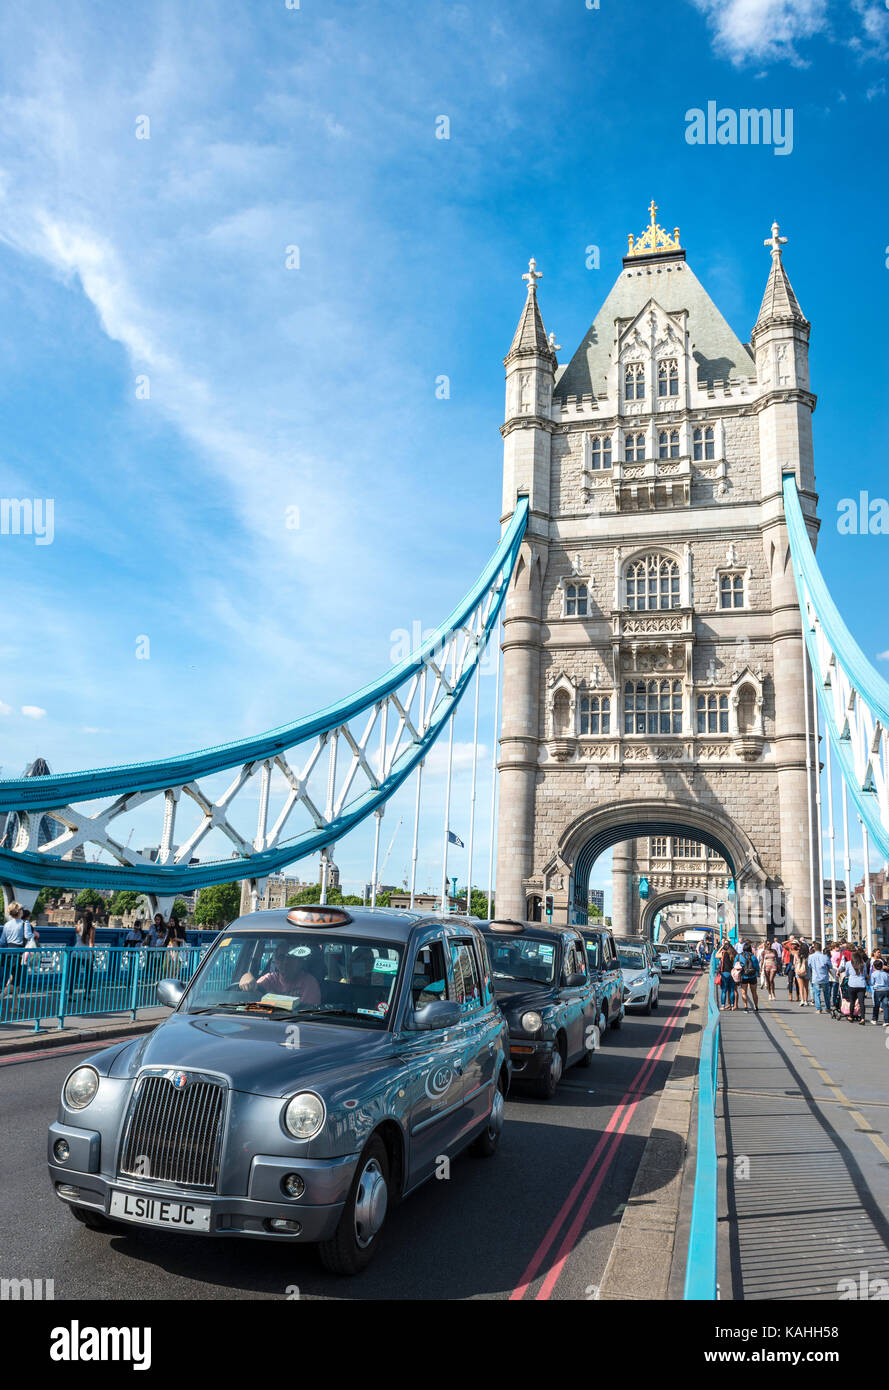 Les taxis sur Tower Bridge, Southwark, Londres, Angleterre, Grande-Bretagne Banque D'Images